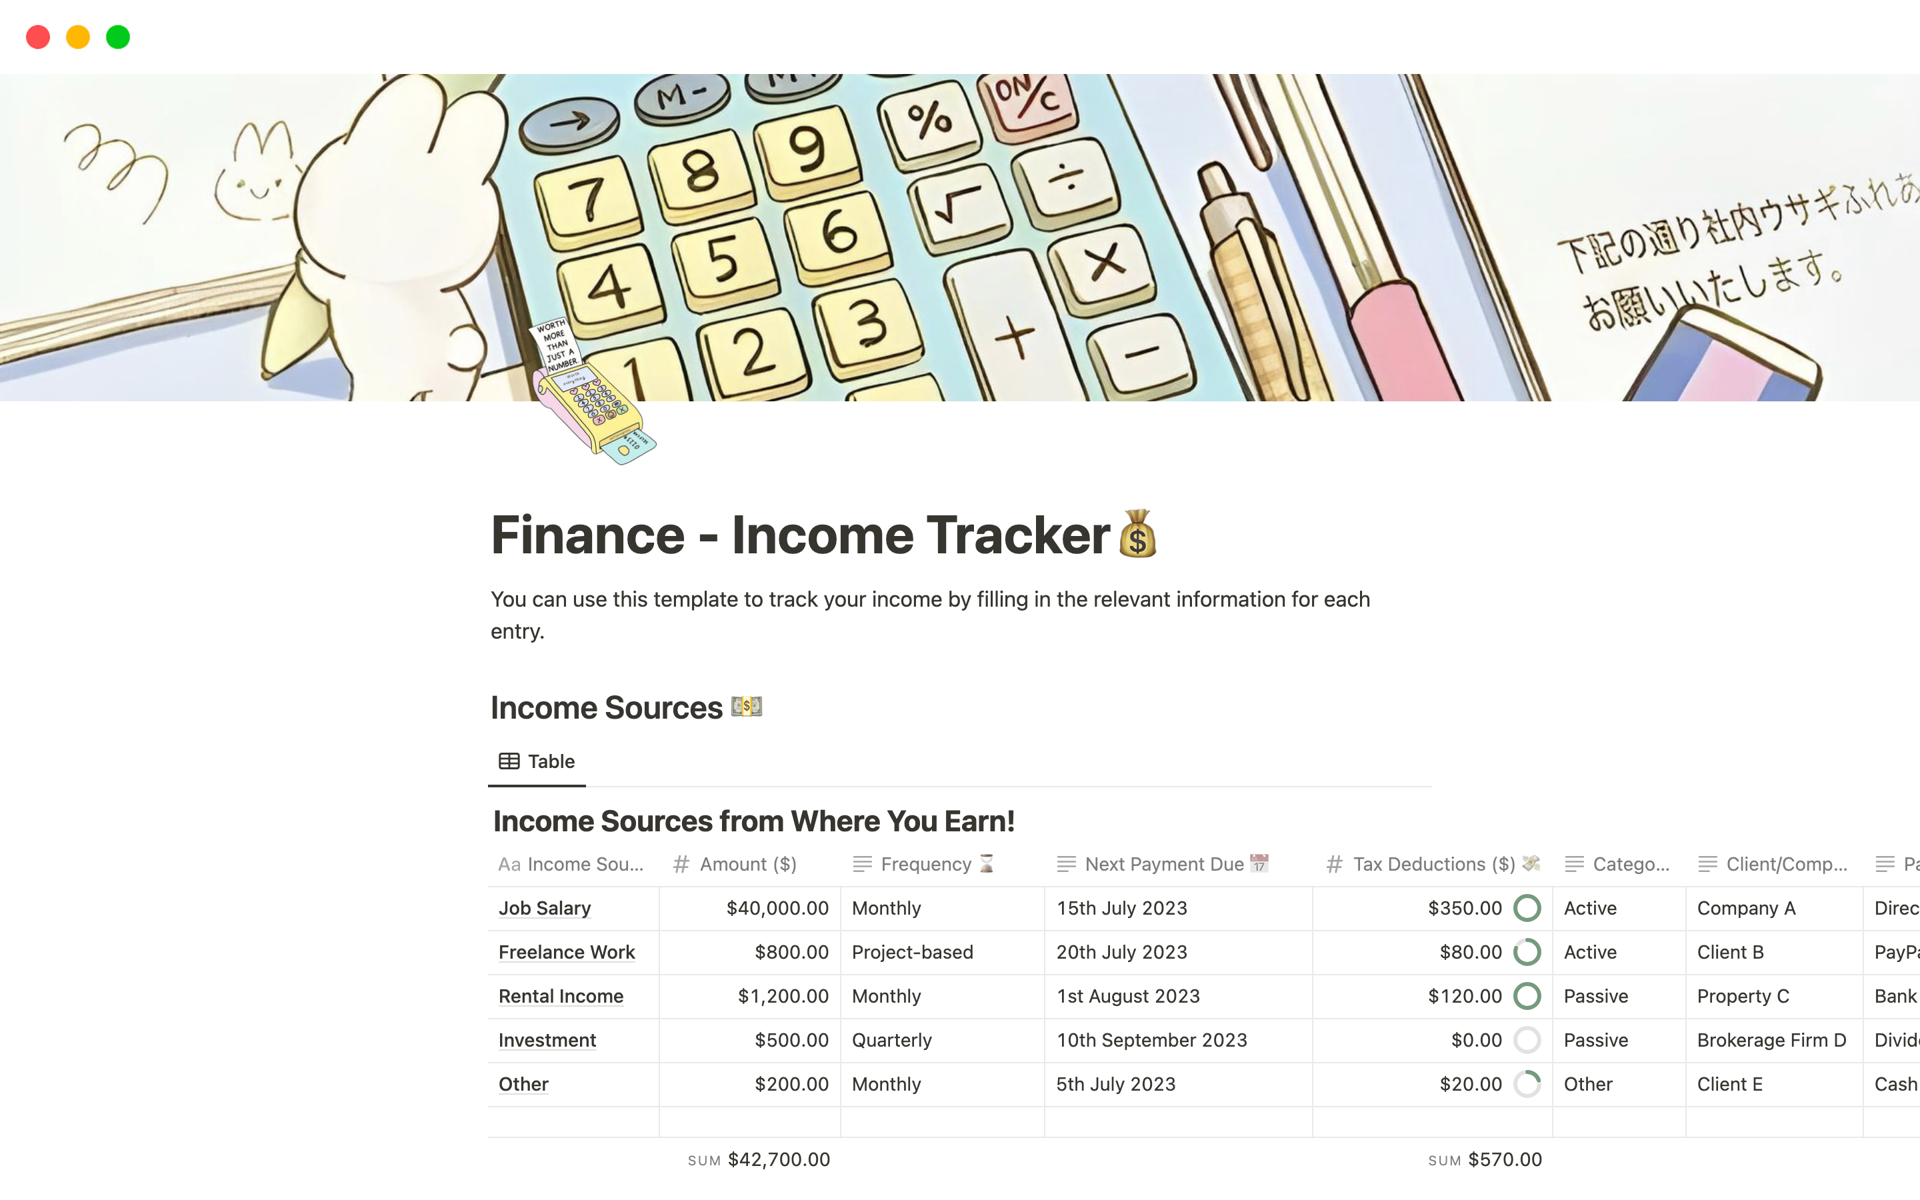 Uma prévia do modelo para Finance - Income Tracker